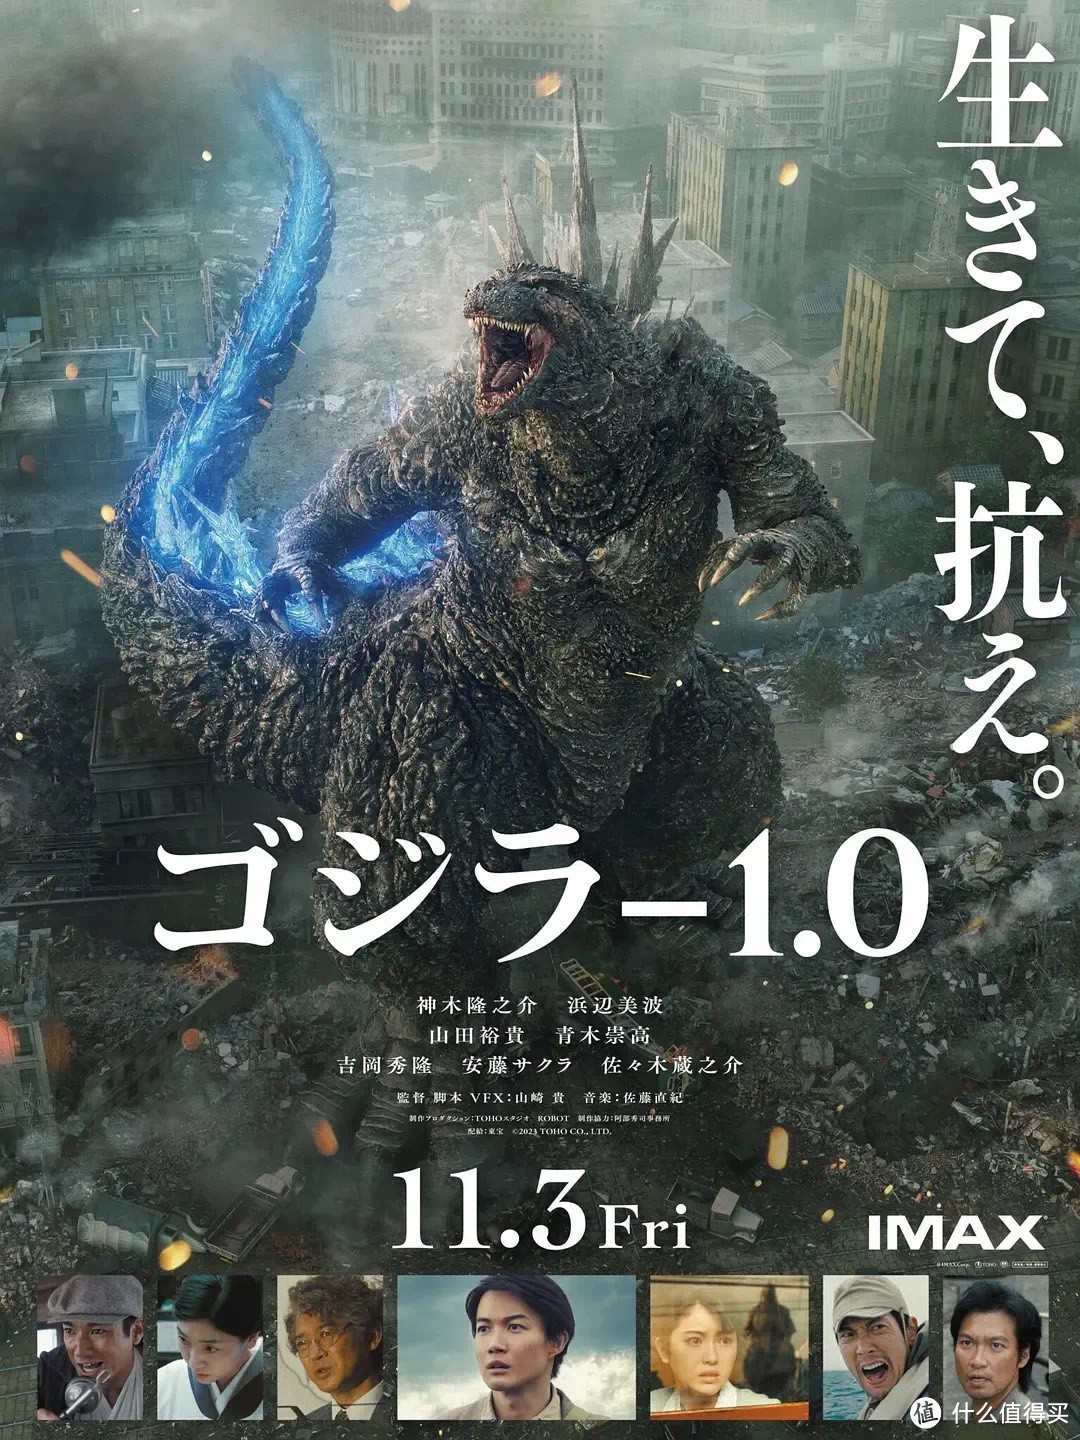 日本原味怪兽！奥斯卡最佳视觉大奖《哥斯拉-1.0》上线了，厉害炸了！